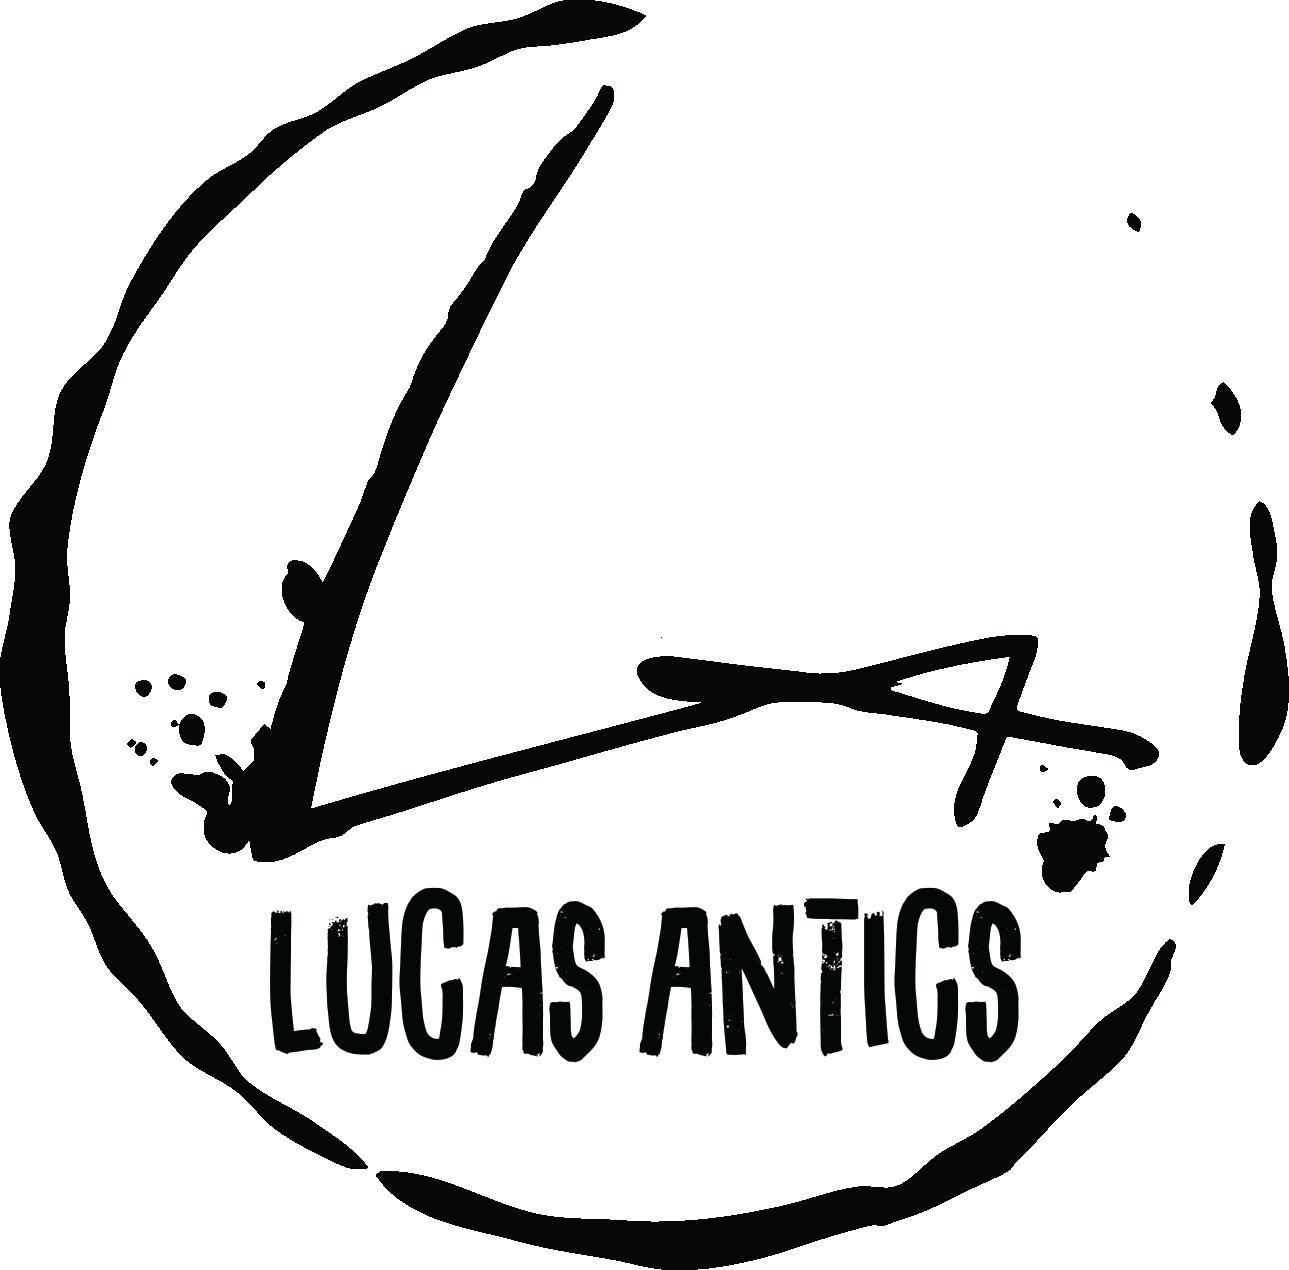 Lucas Antics